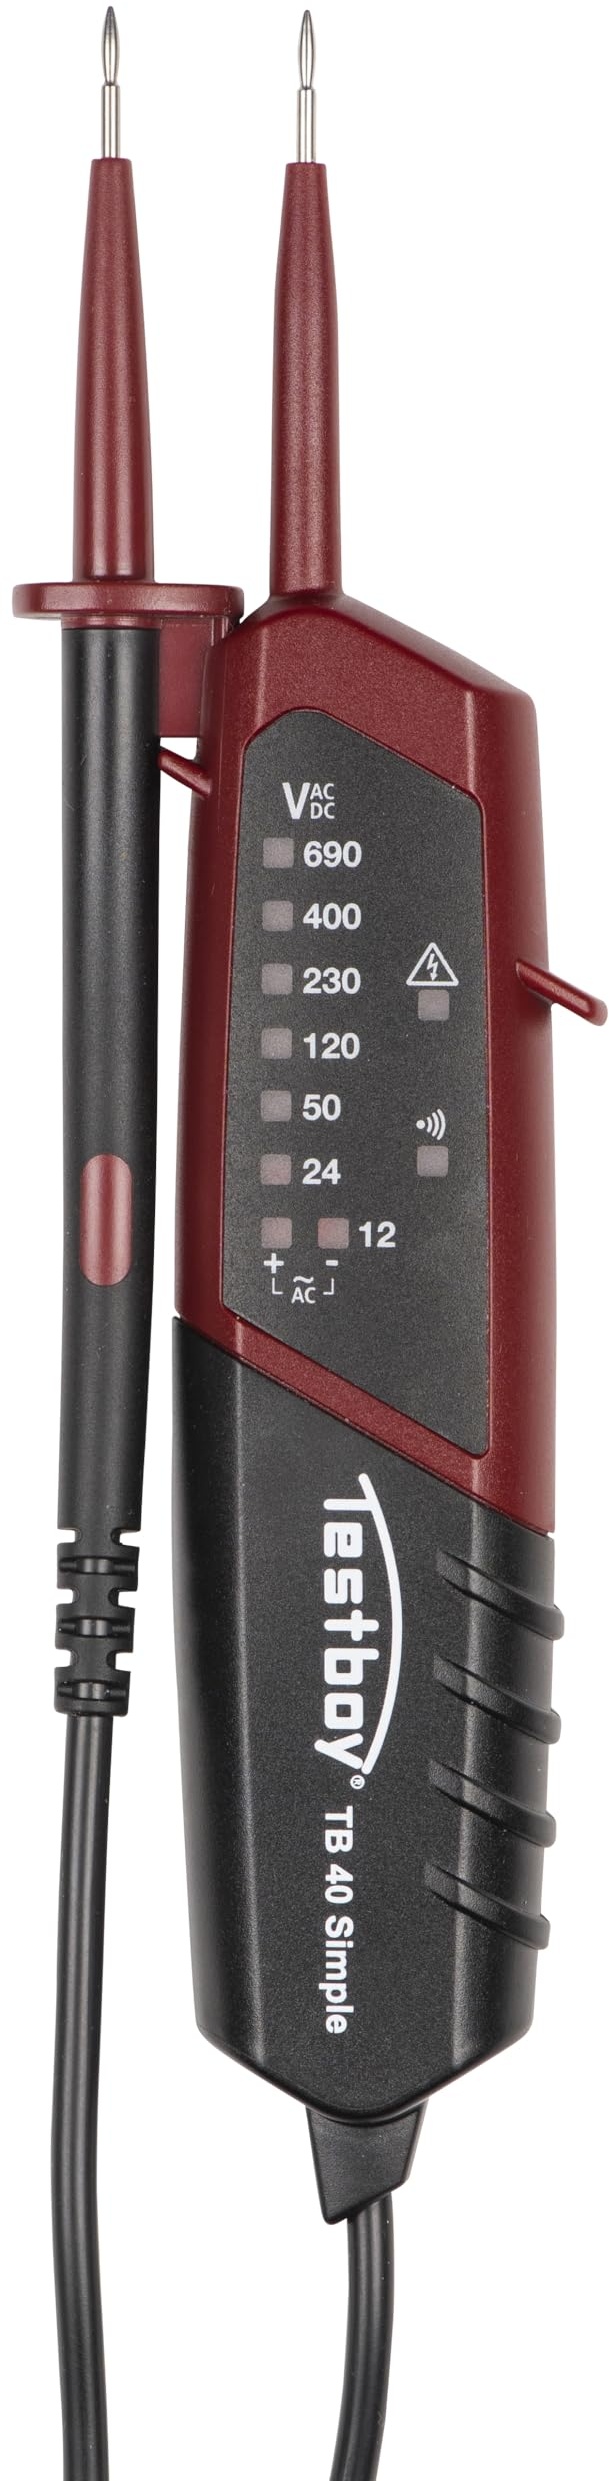 Testboy 40 Simple Zweipoliger Spannungsprüfer mit LED-Anzeige für Gleich- und Wechselspannung (Durchgangsprüfung, Einhandbedienung, Spannungsbereich 12 - 690 V AC/DC, Anzeige mit 10 LEDs), Schwarz/Rot